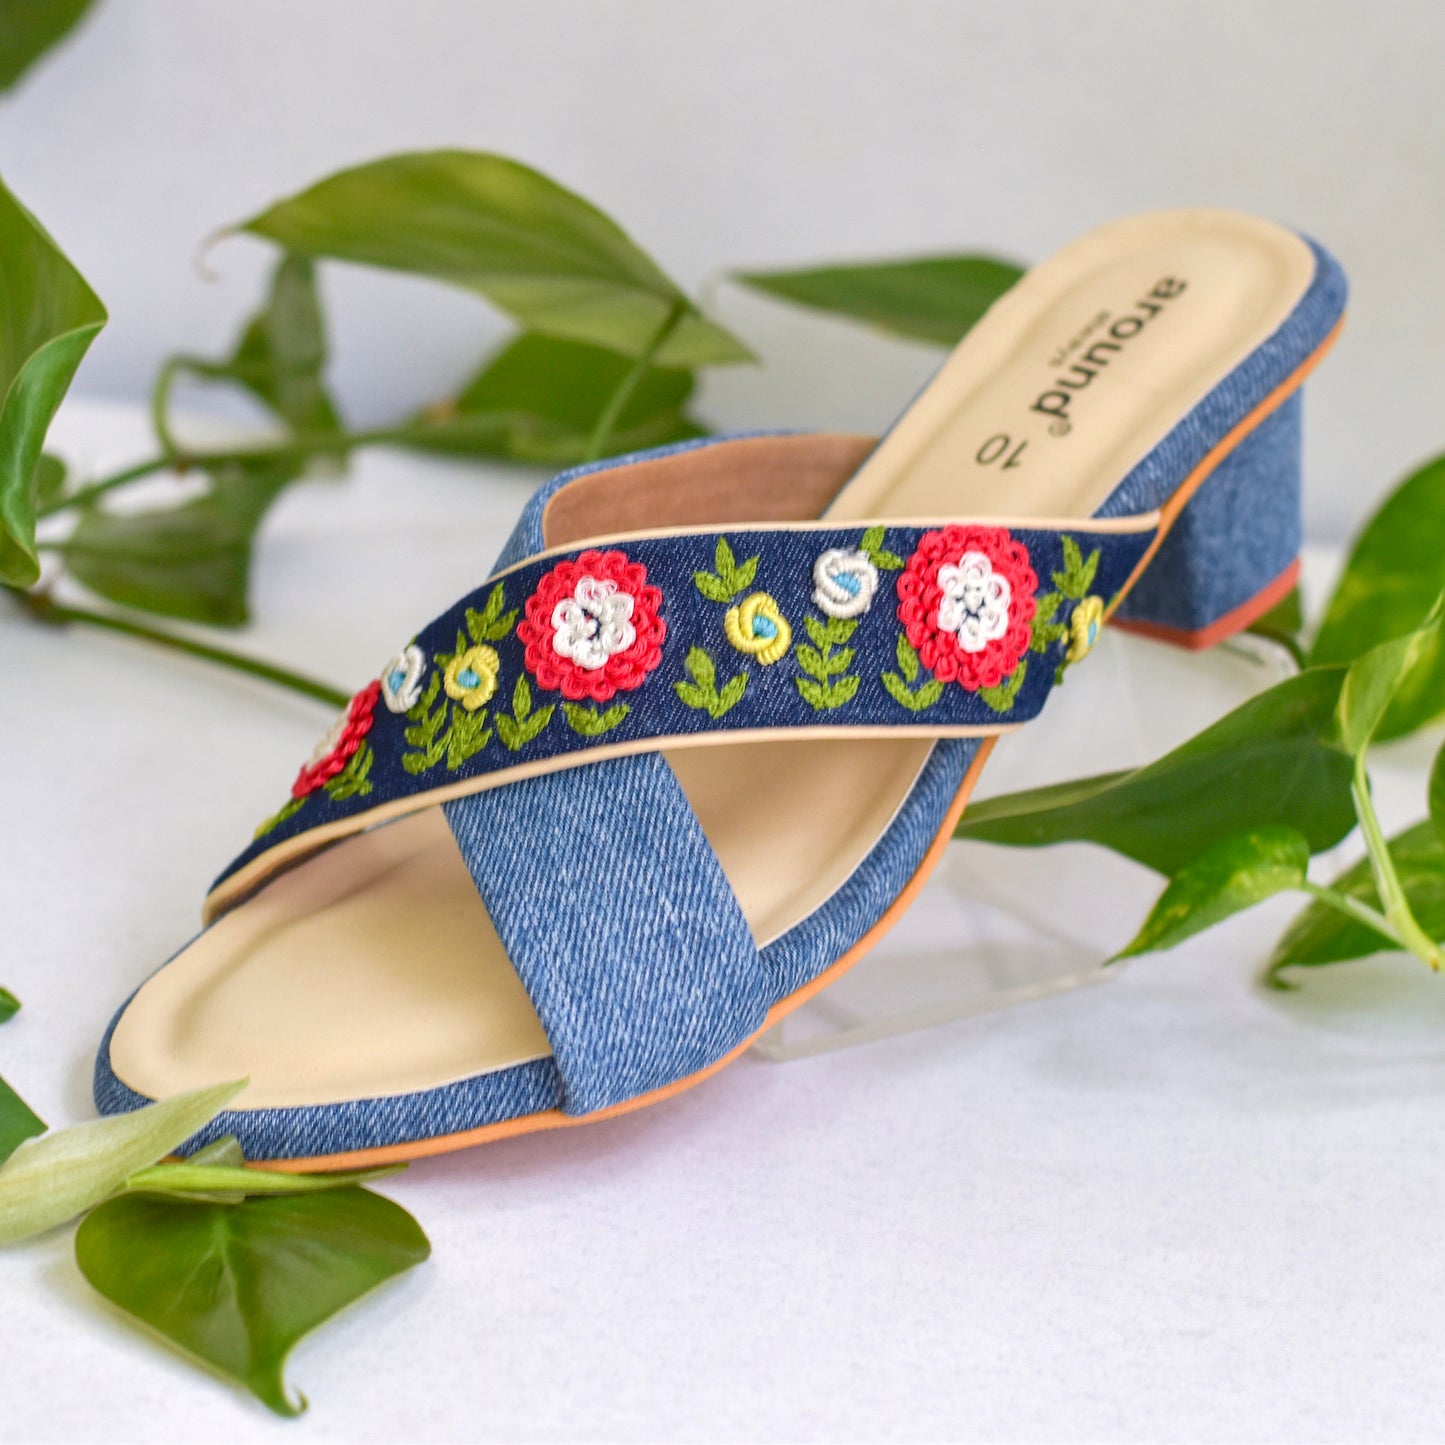 Handmade sandals for girls for wearing under denims